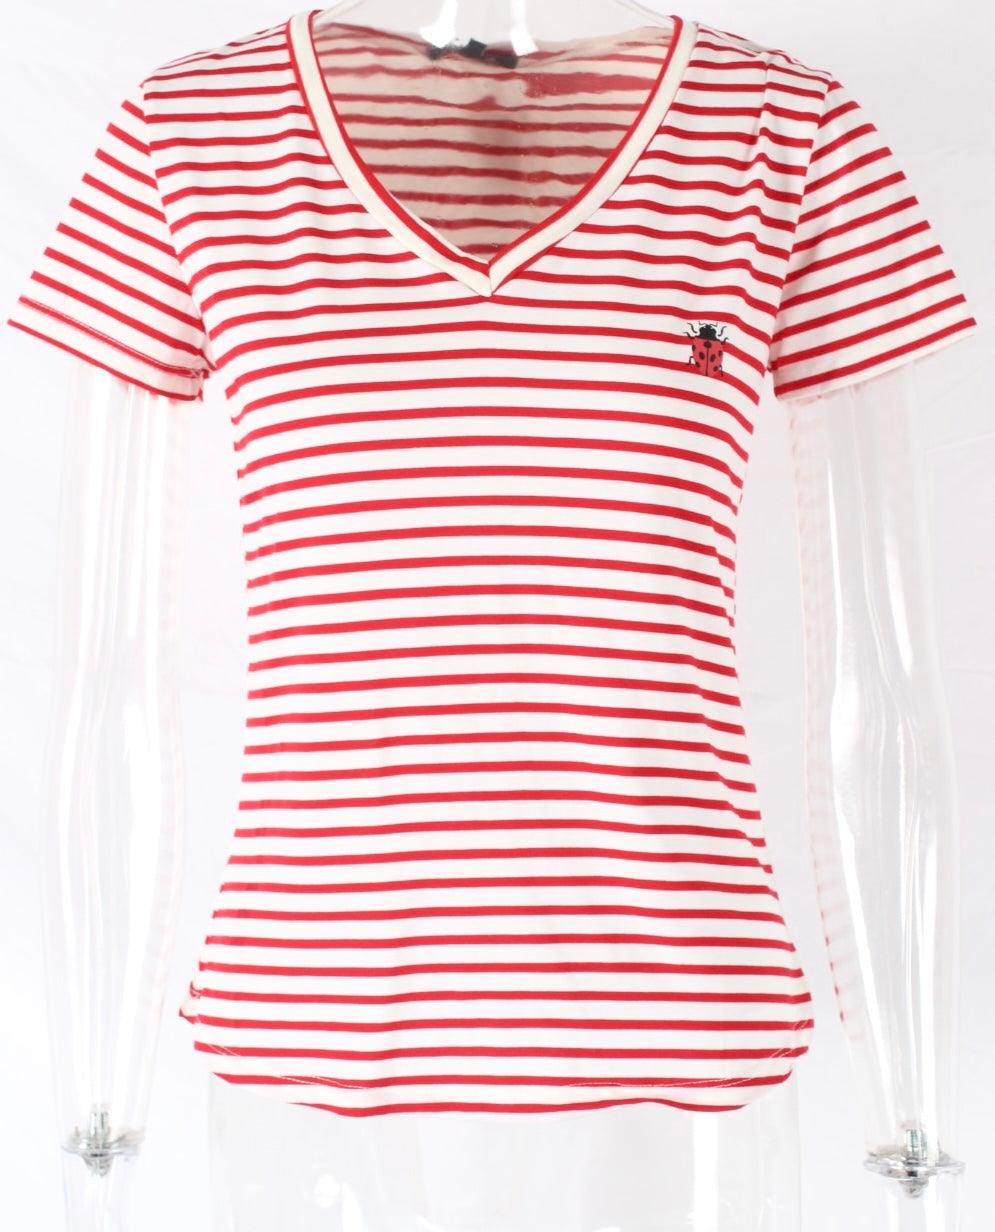 Stripe Short Sleeve T-shirt Ladybug - XD21